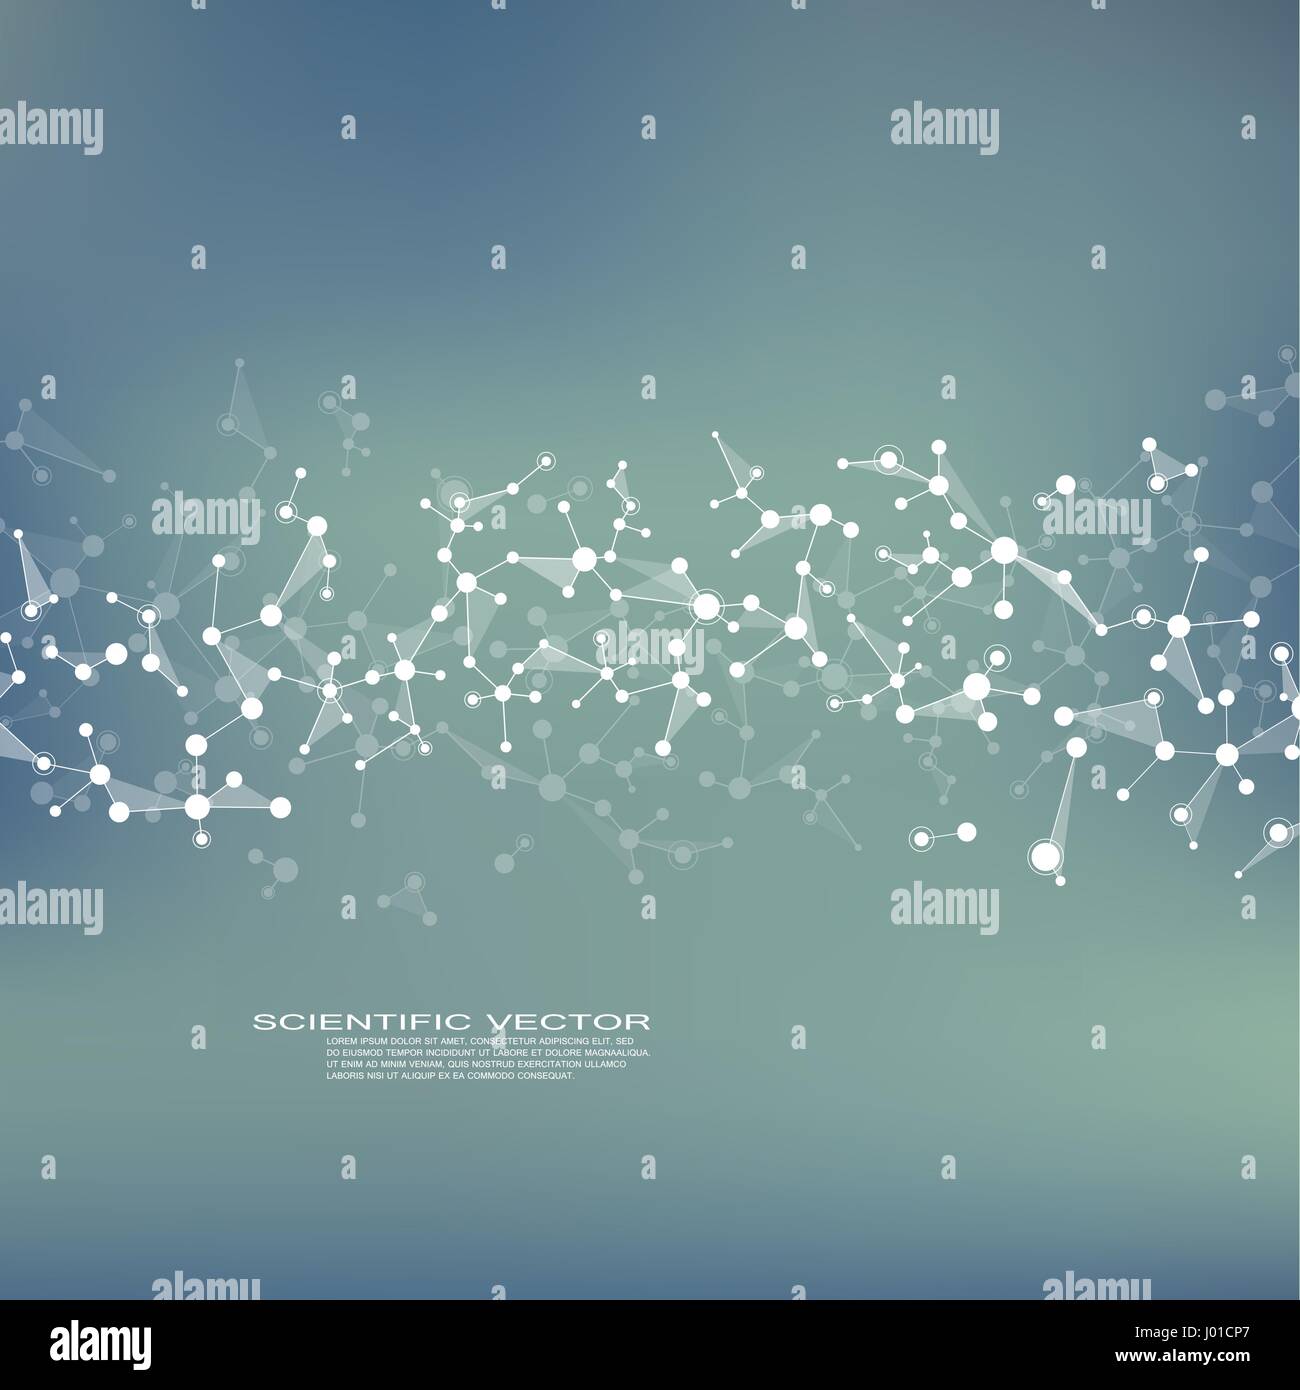 Struktur-Molekül Dna und Neuronen verbundene Linien mit Punkten, genetischen und chemischen Verbindungen medizinischen oder wissenschaftlichen Hintergrund für Banner oder Flyer-Vektor-illustration Stock Vektor